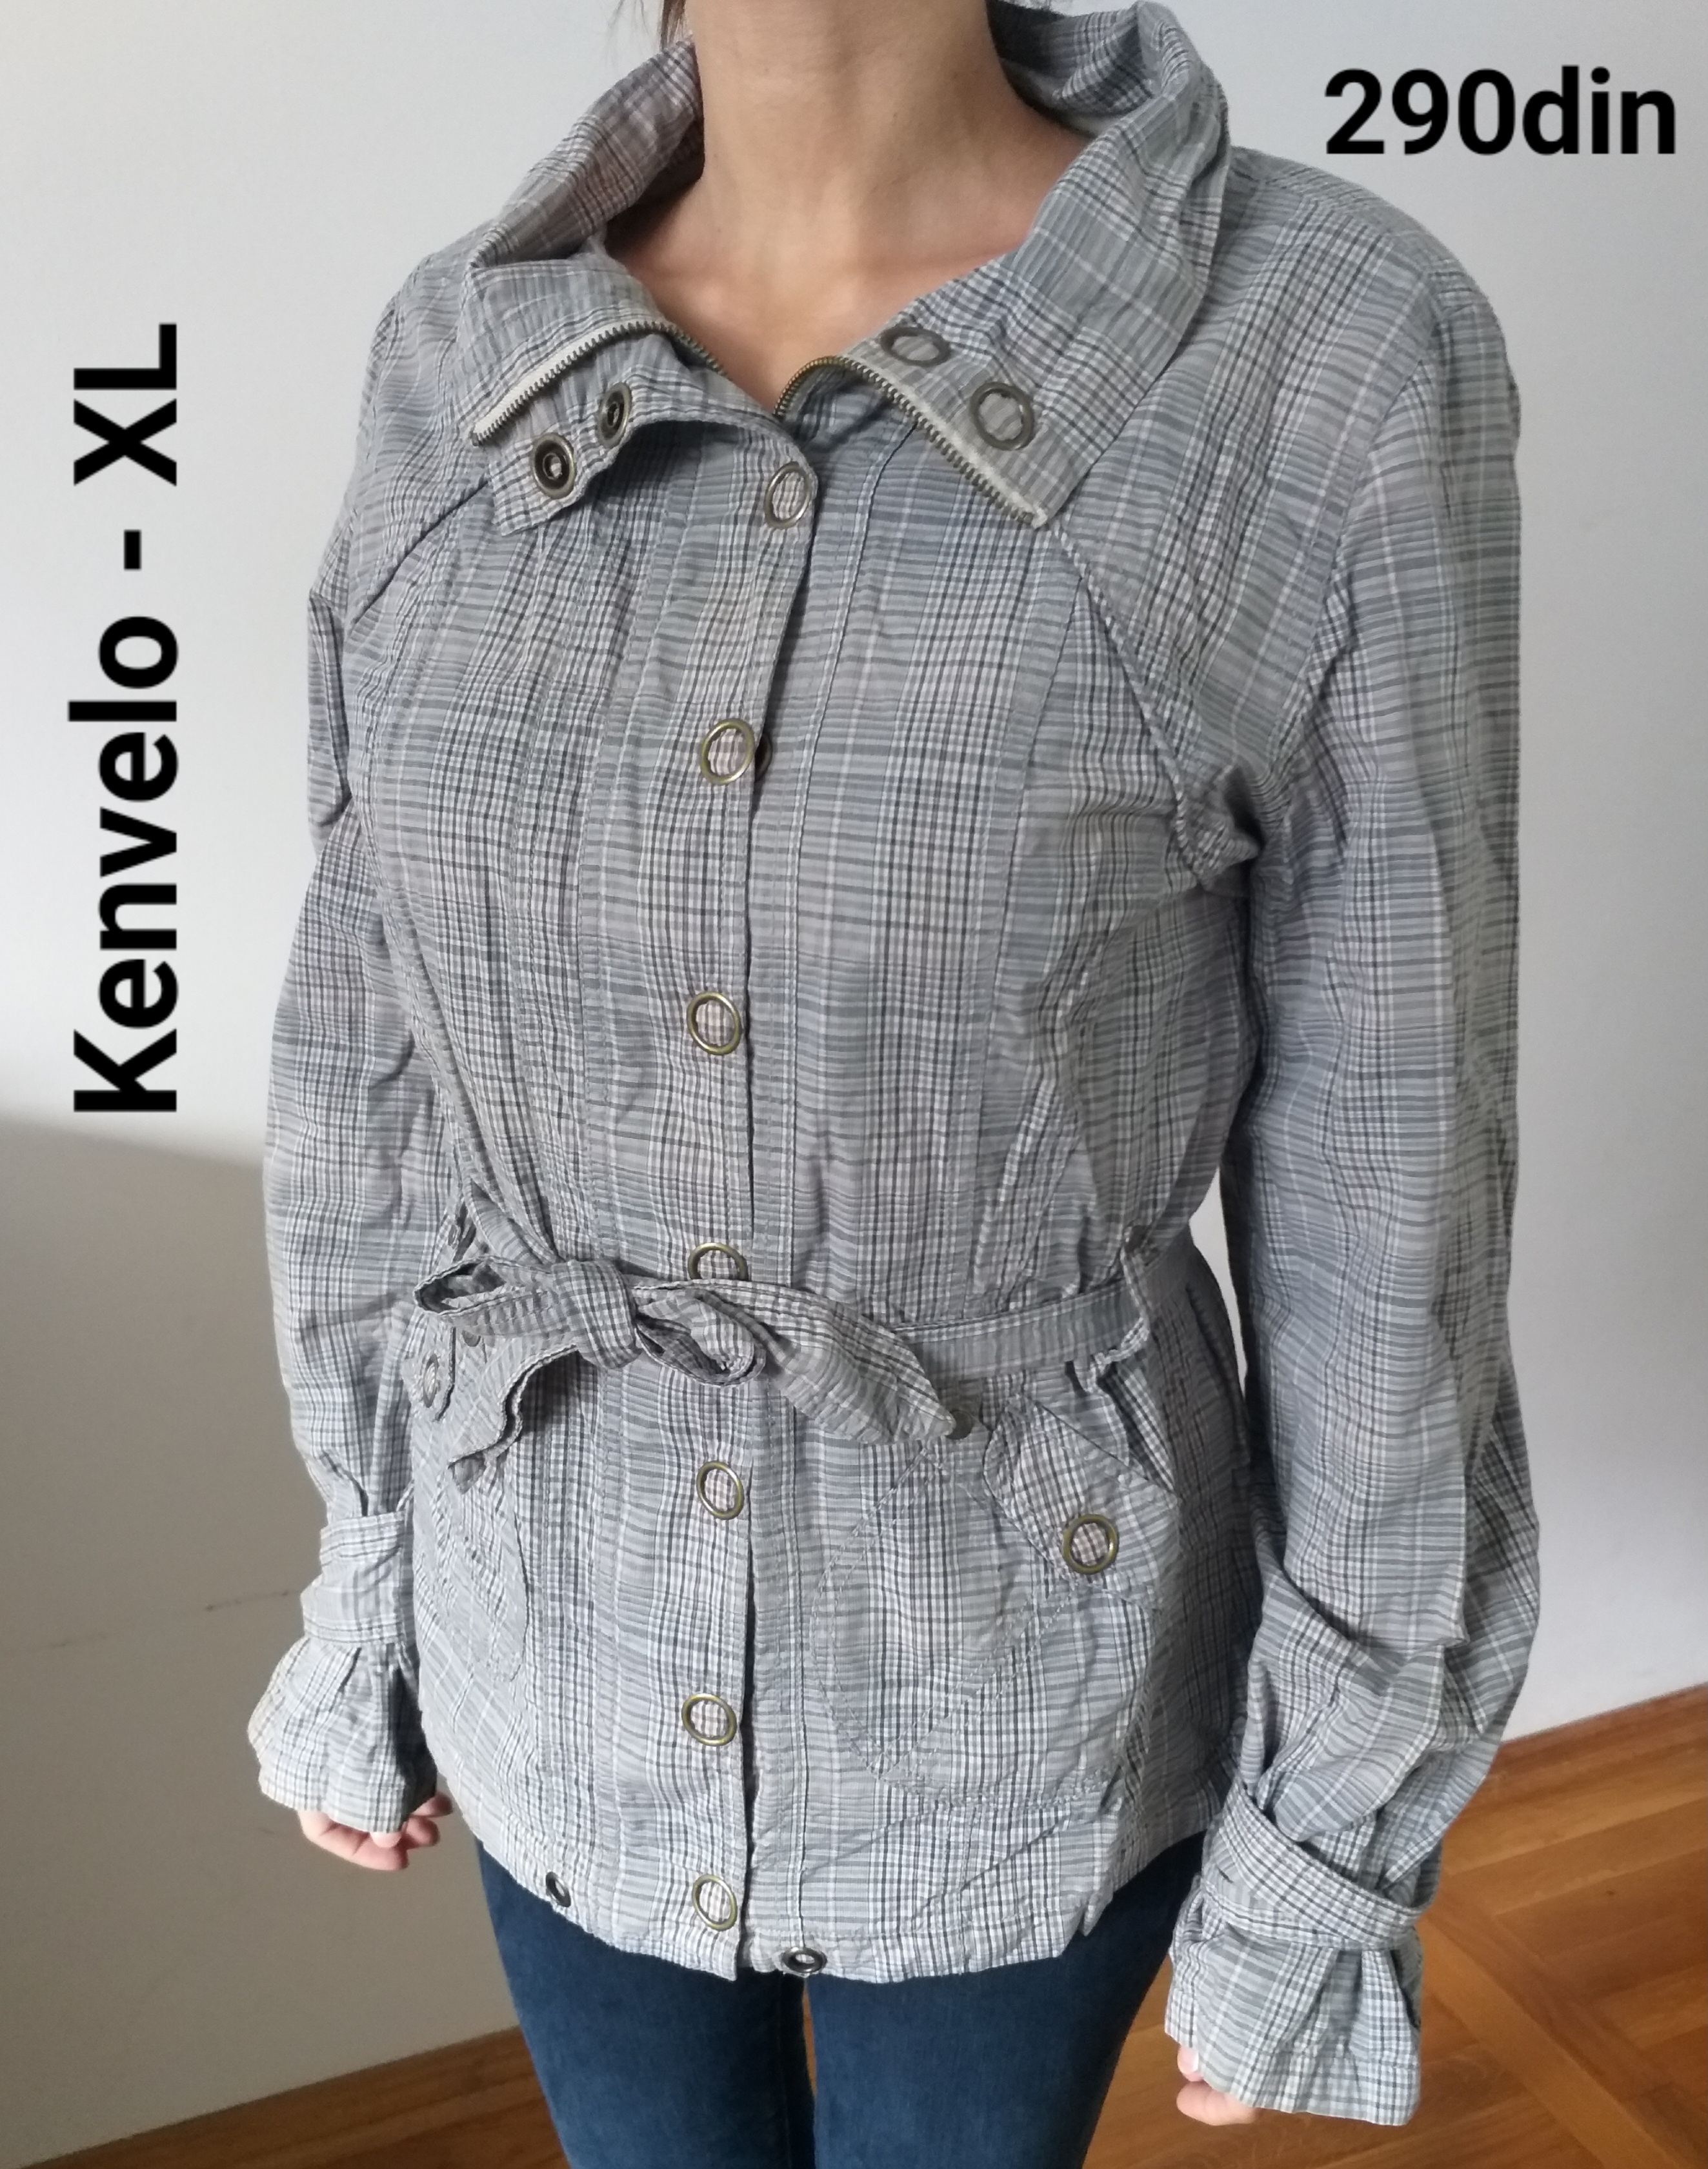 Kenvelo ženska jakna siva XL/42